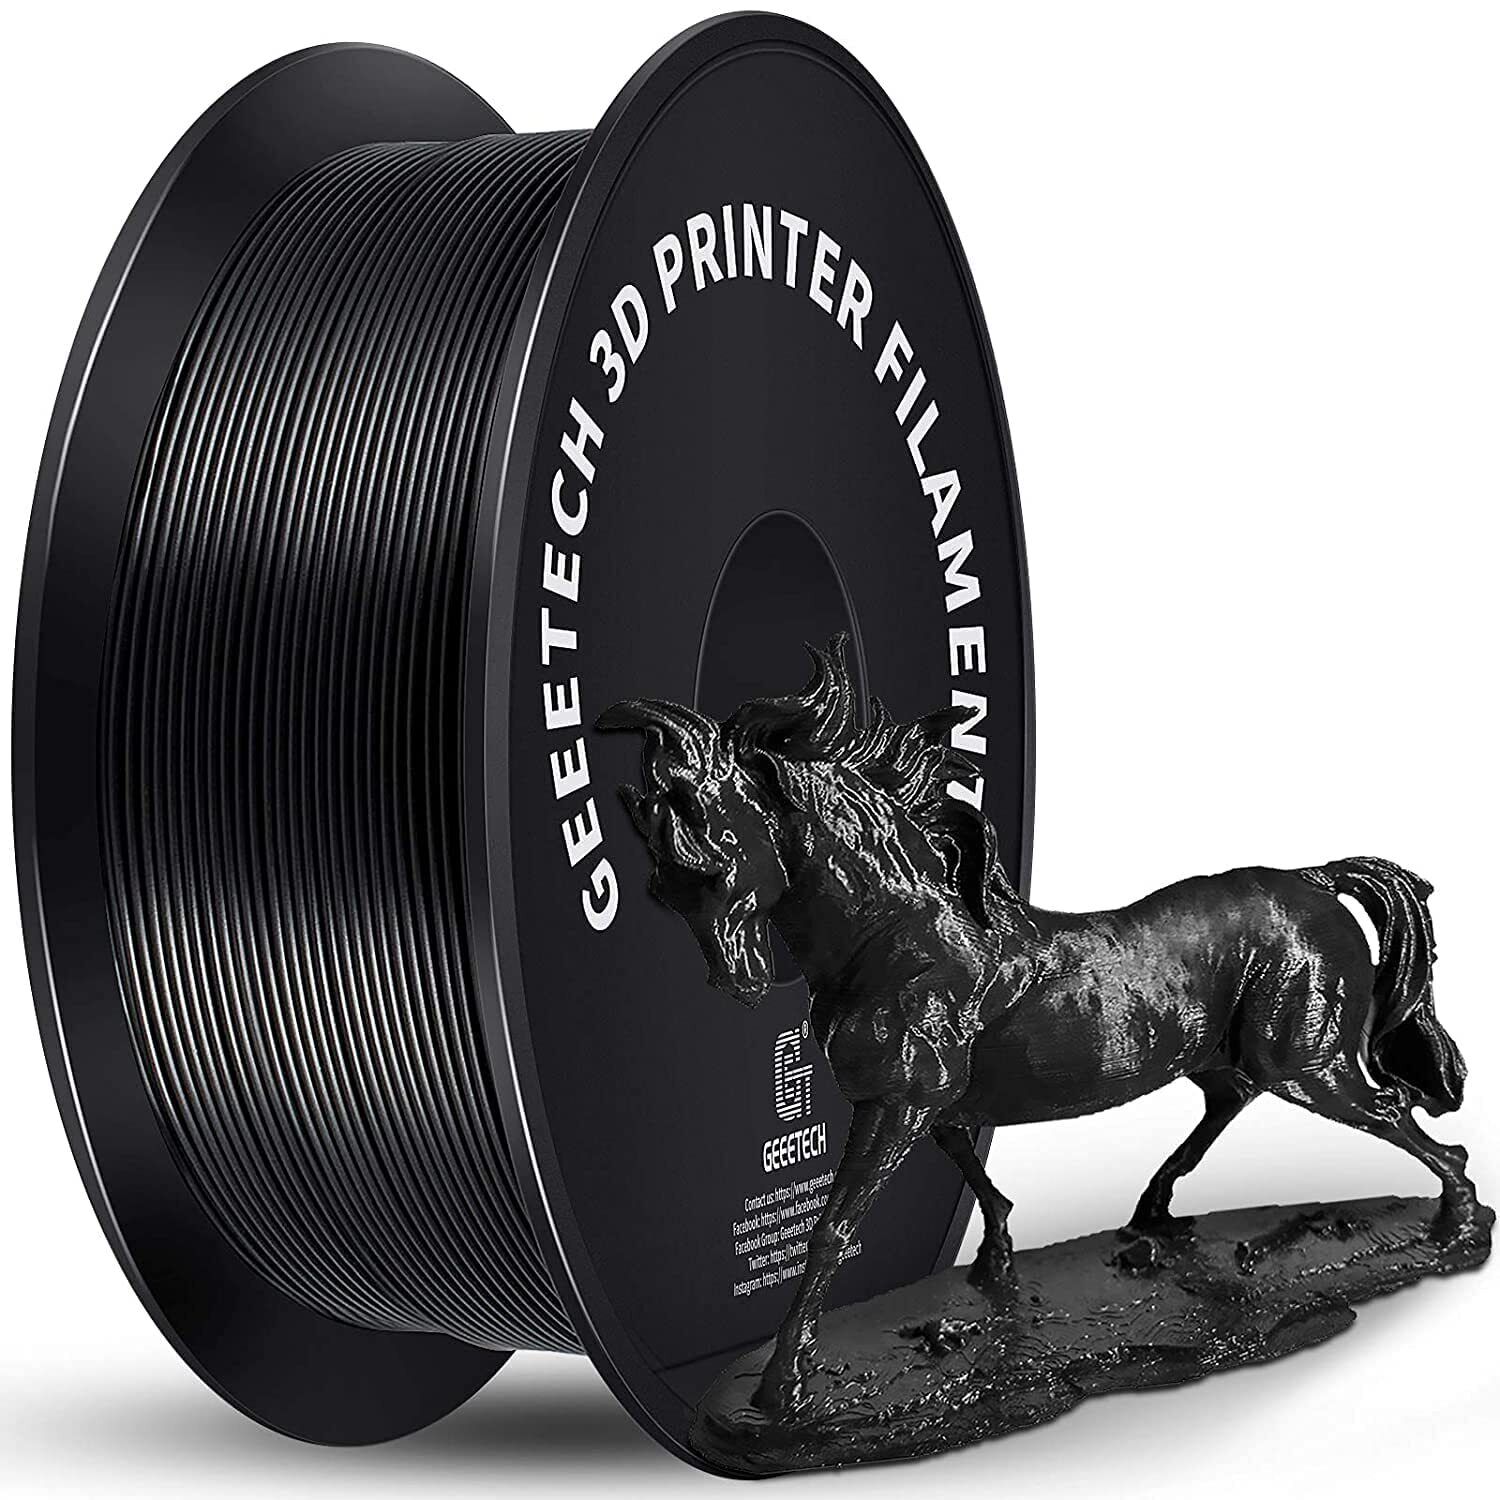 GEEETECH Regular PLA Filament 1.75mm 1KG High Quality Filament For 3D Printer